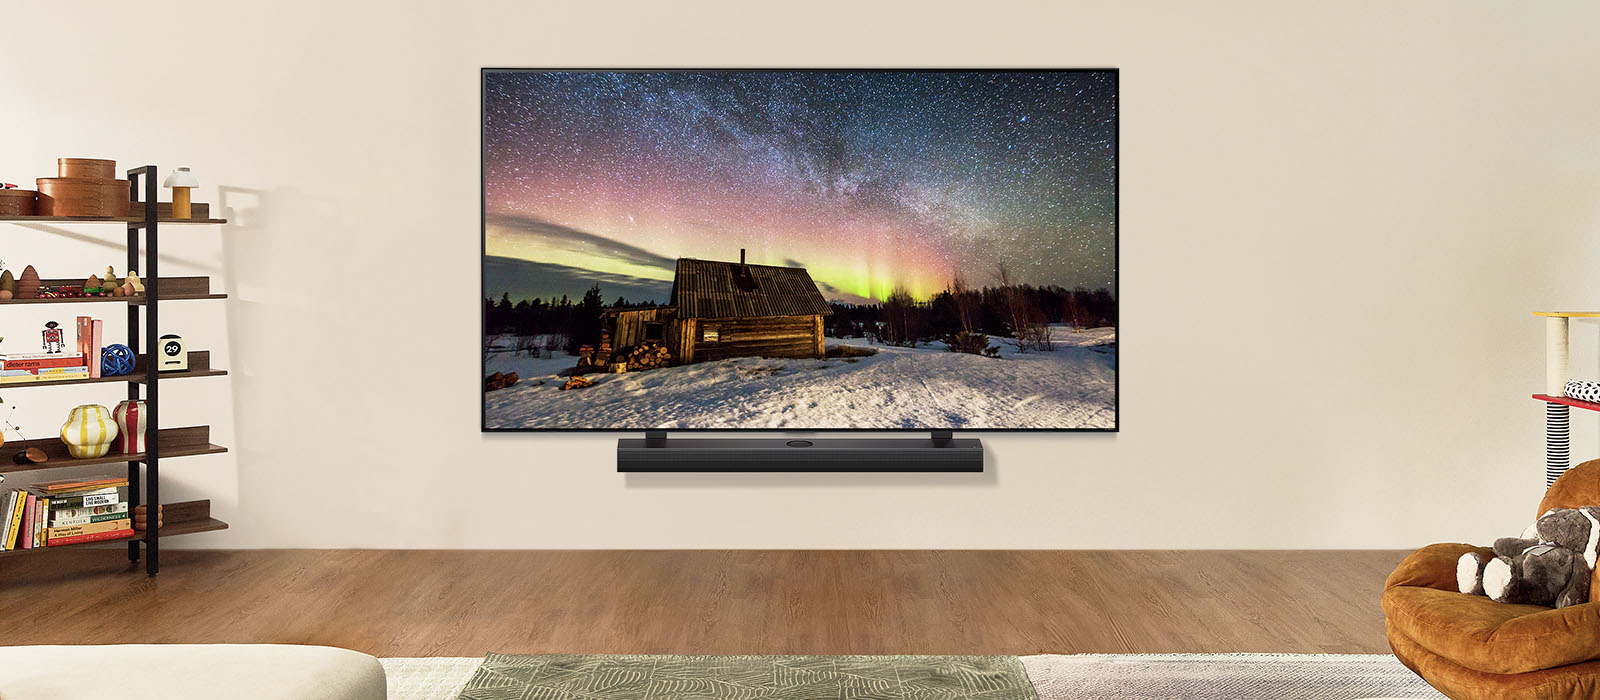 LG TV ir LG garso juosta modernioje gyvenamojoje patalpoje dienos metu. Poliarinės pašvaistės vaizdas ekrane rodomas idealiu ryškumo lygiu.